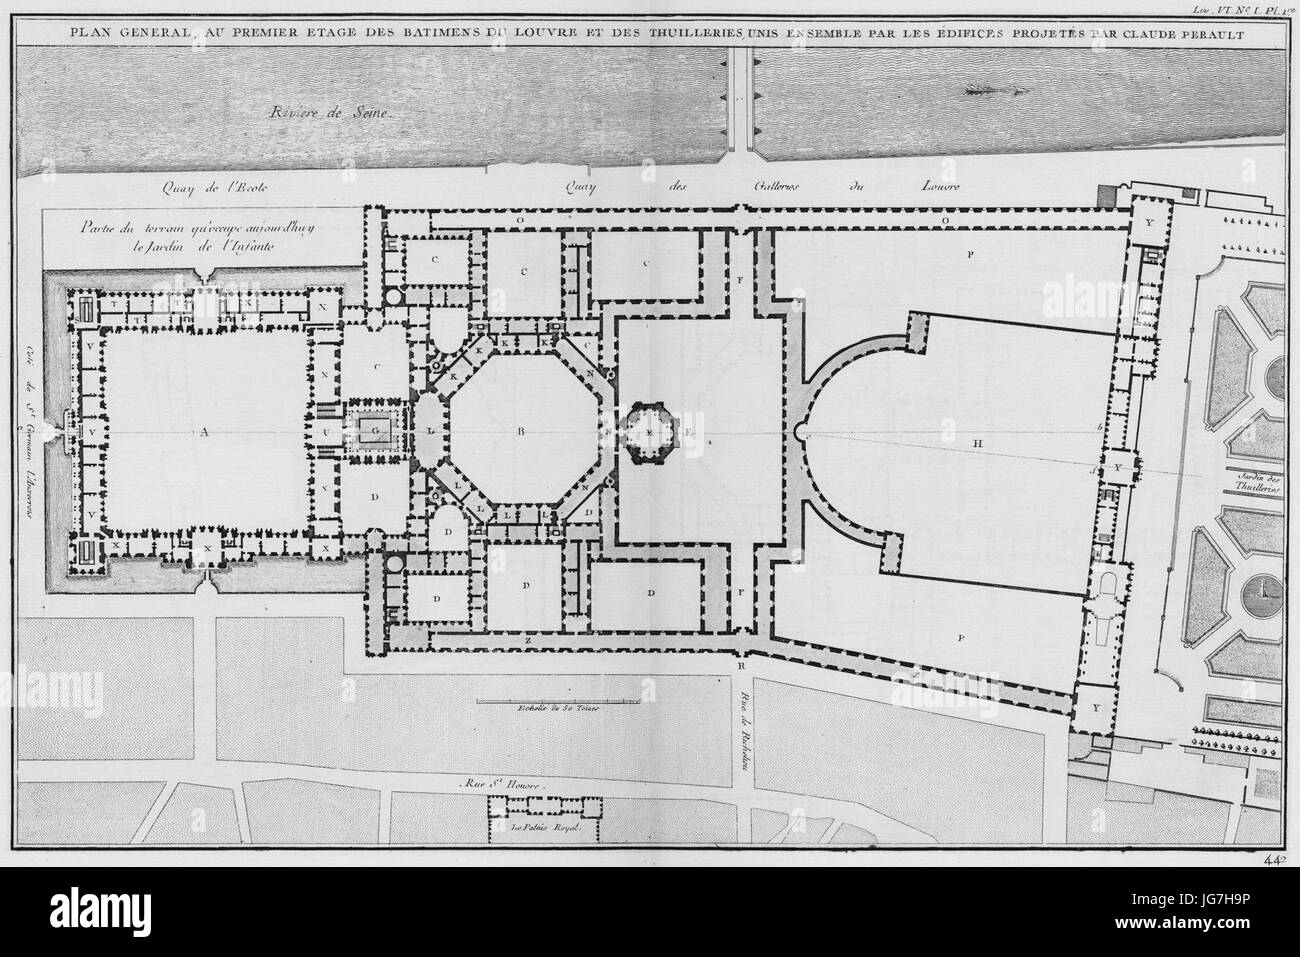 Louvre et Tuileries - Plan général suivant le premier projet de Claude Perrault - Architecture françoise Tomé4 Livre6 PL1 Banque D'Images